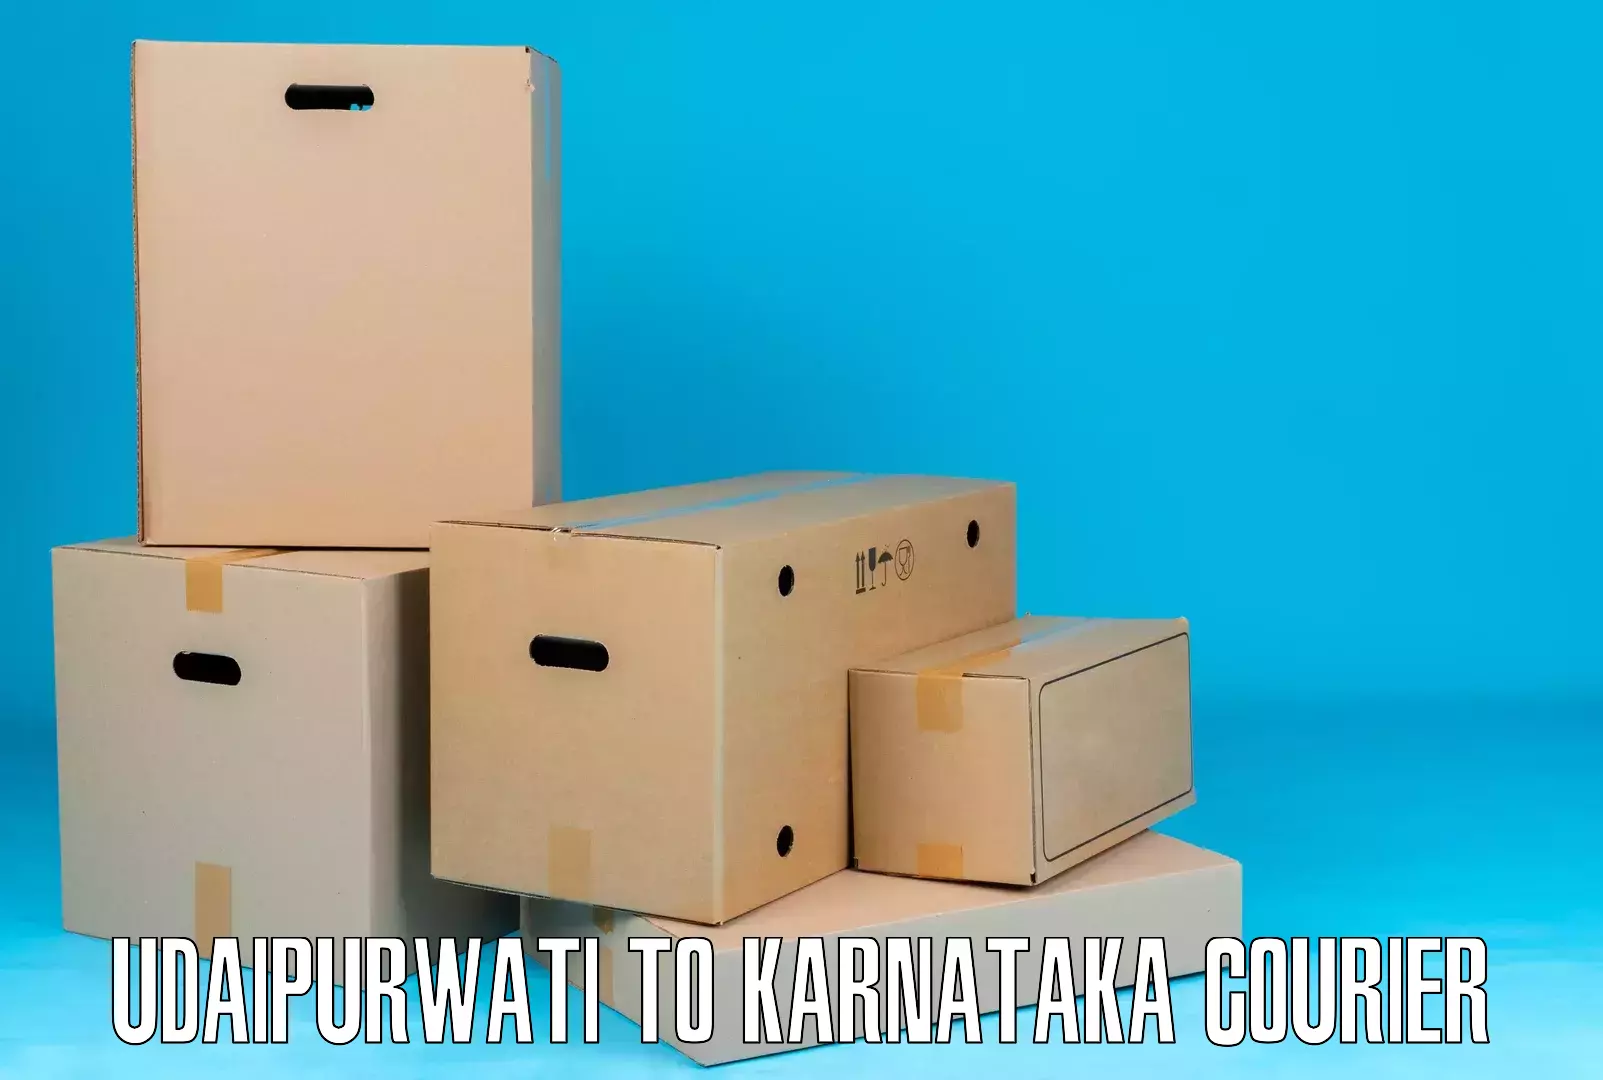 Courier service comparison Udaipurwati to Anavatti